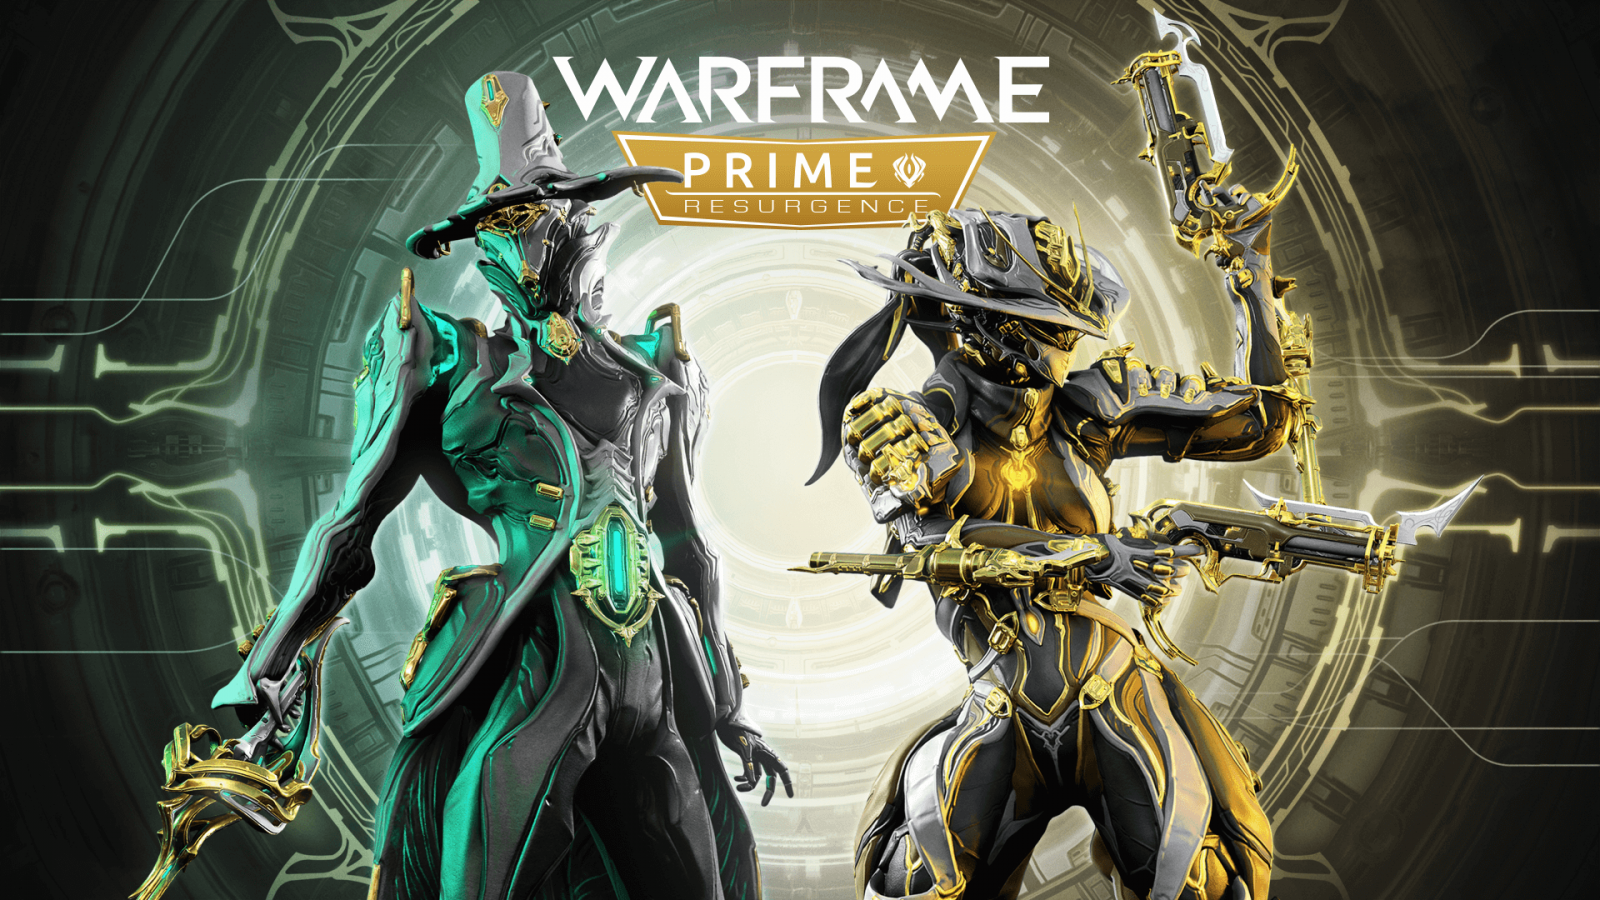 Prime Diriliş: Mesa Prime ve Limbo Prime